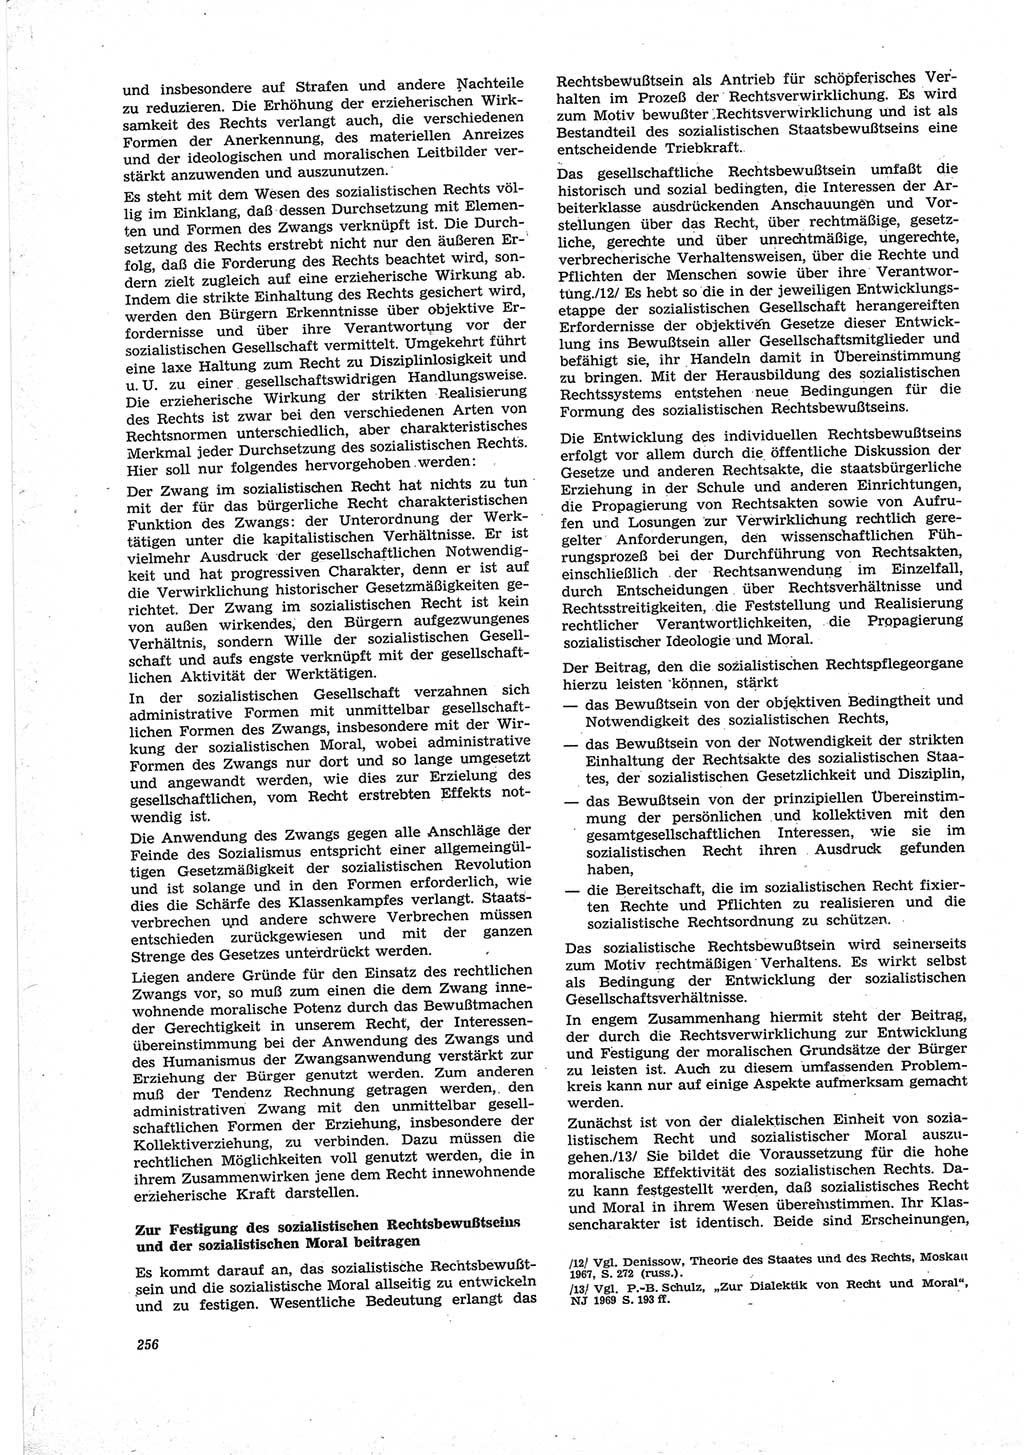 Neue Justiz (NJ), Zeitschrift für Recht und Rechtswissenschaft [Deutsche Demokratische Republik (DDR)], 25. Jahrgang 1971, Seite 256 (NJ DDR 1971, S. 256)